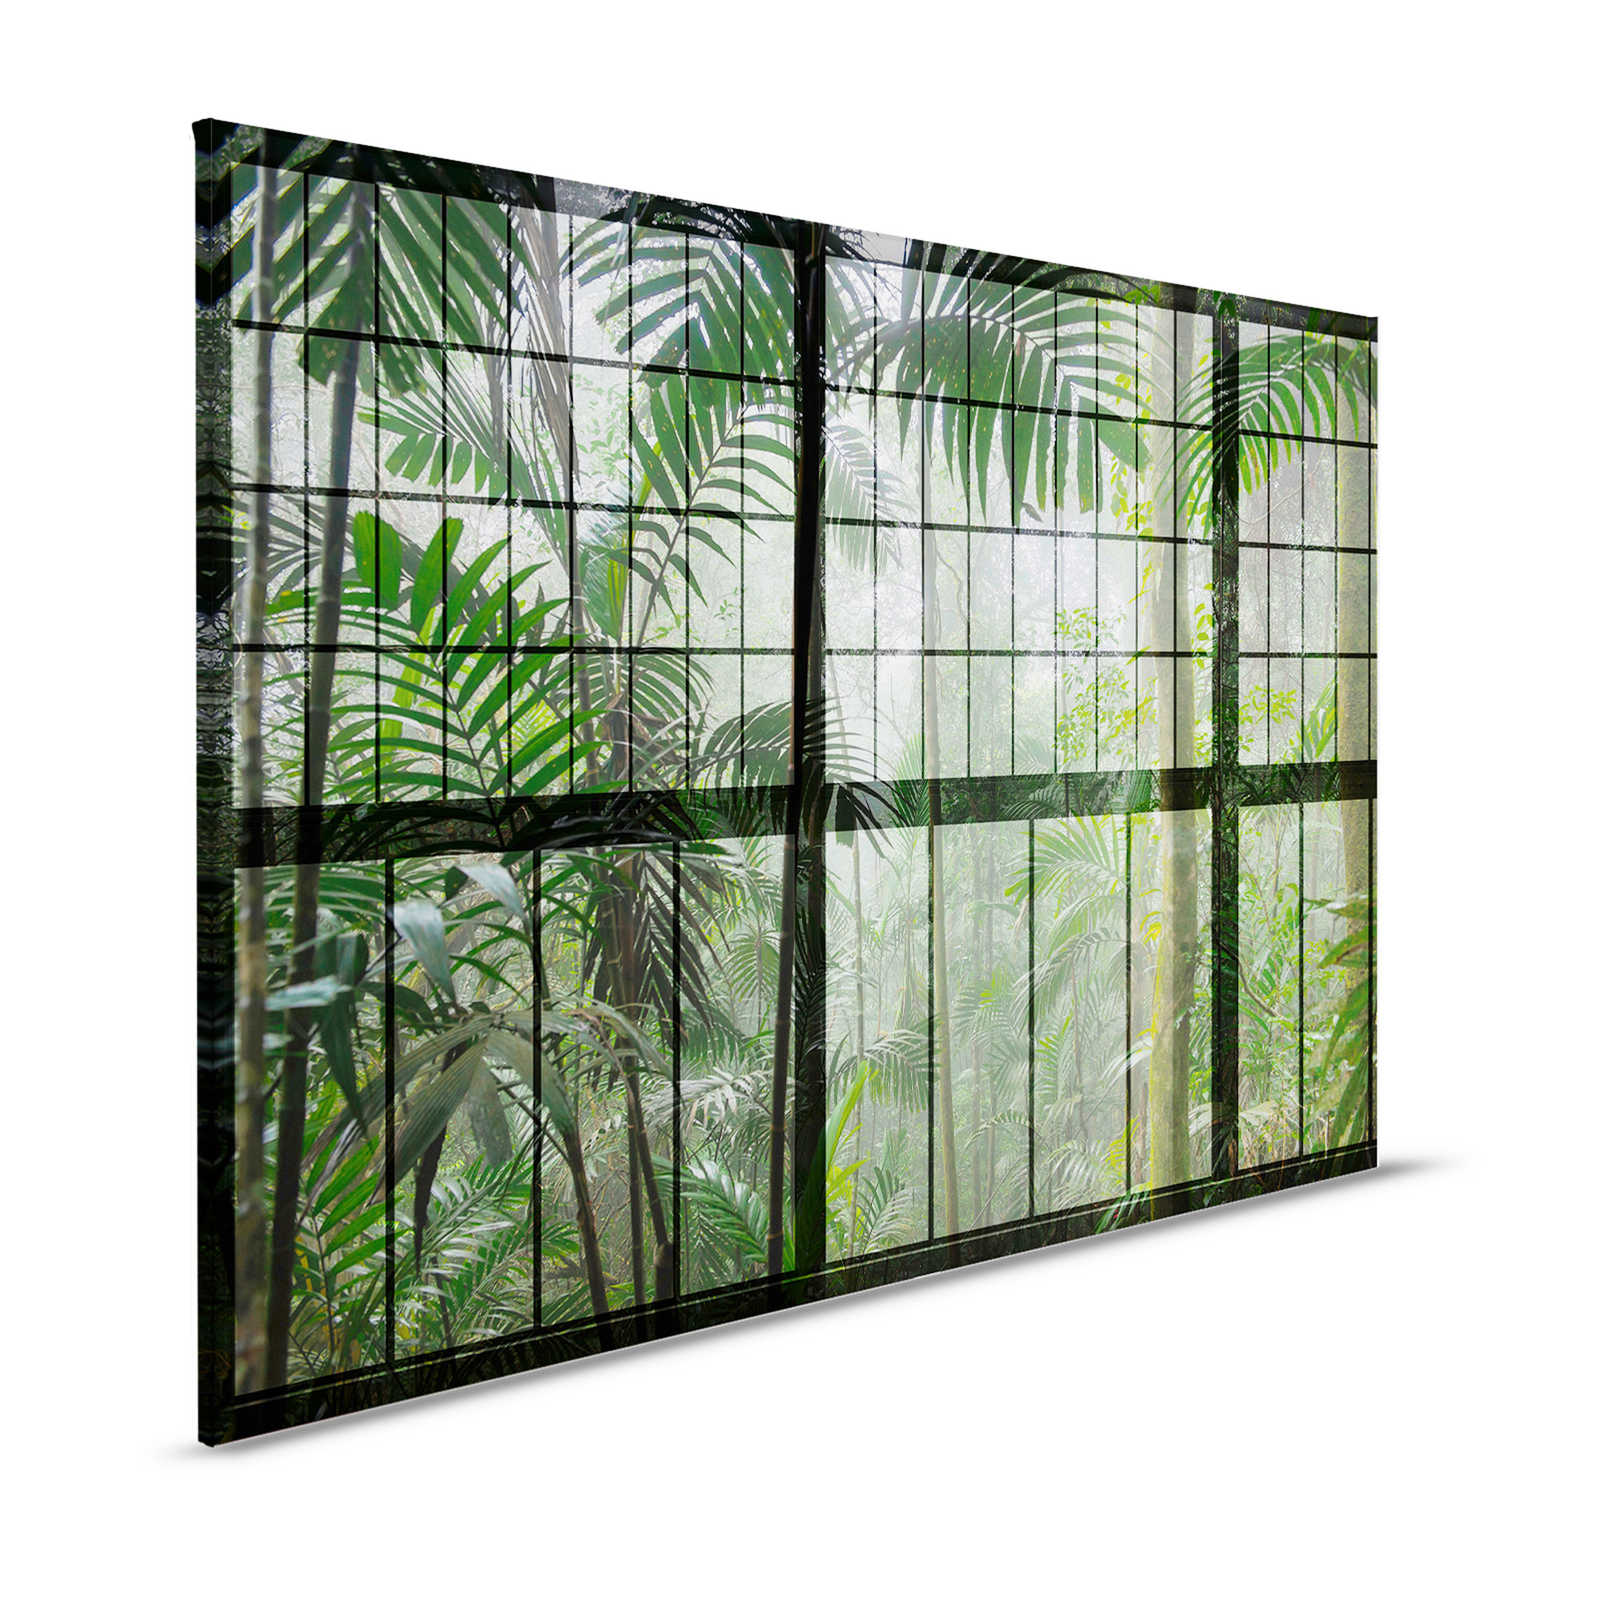 Rainforest 1 - Loft fenêtre toile avec vue sur la jungle - 1,20 m x 0,80 m
